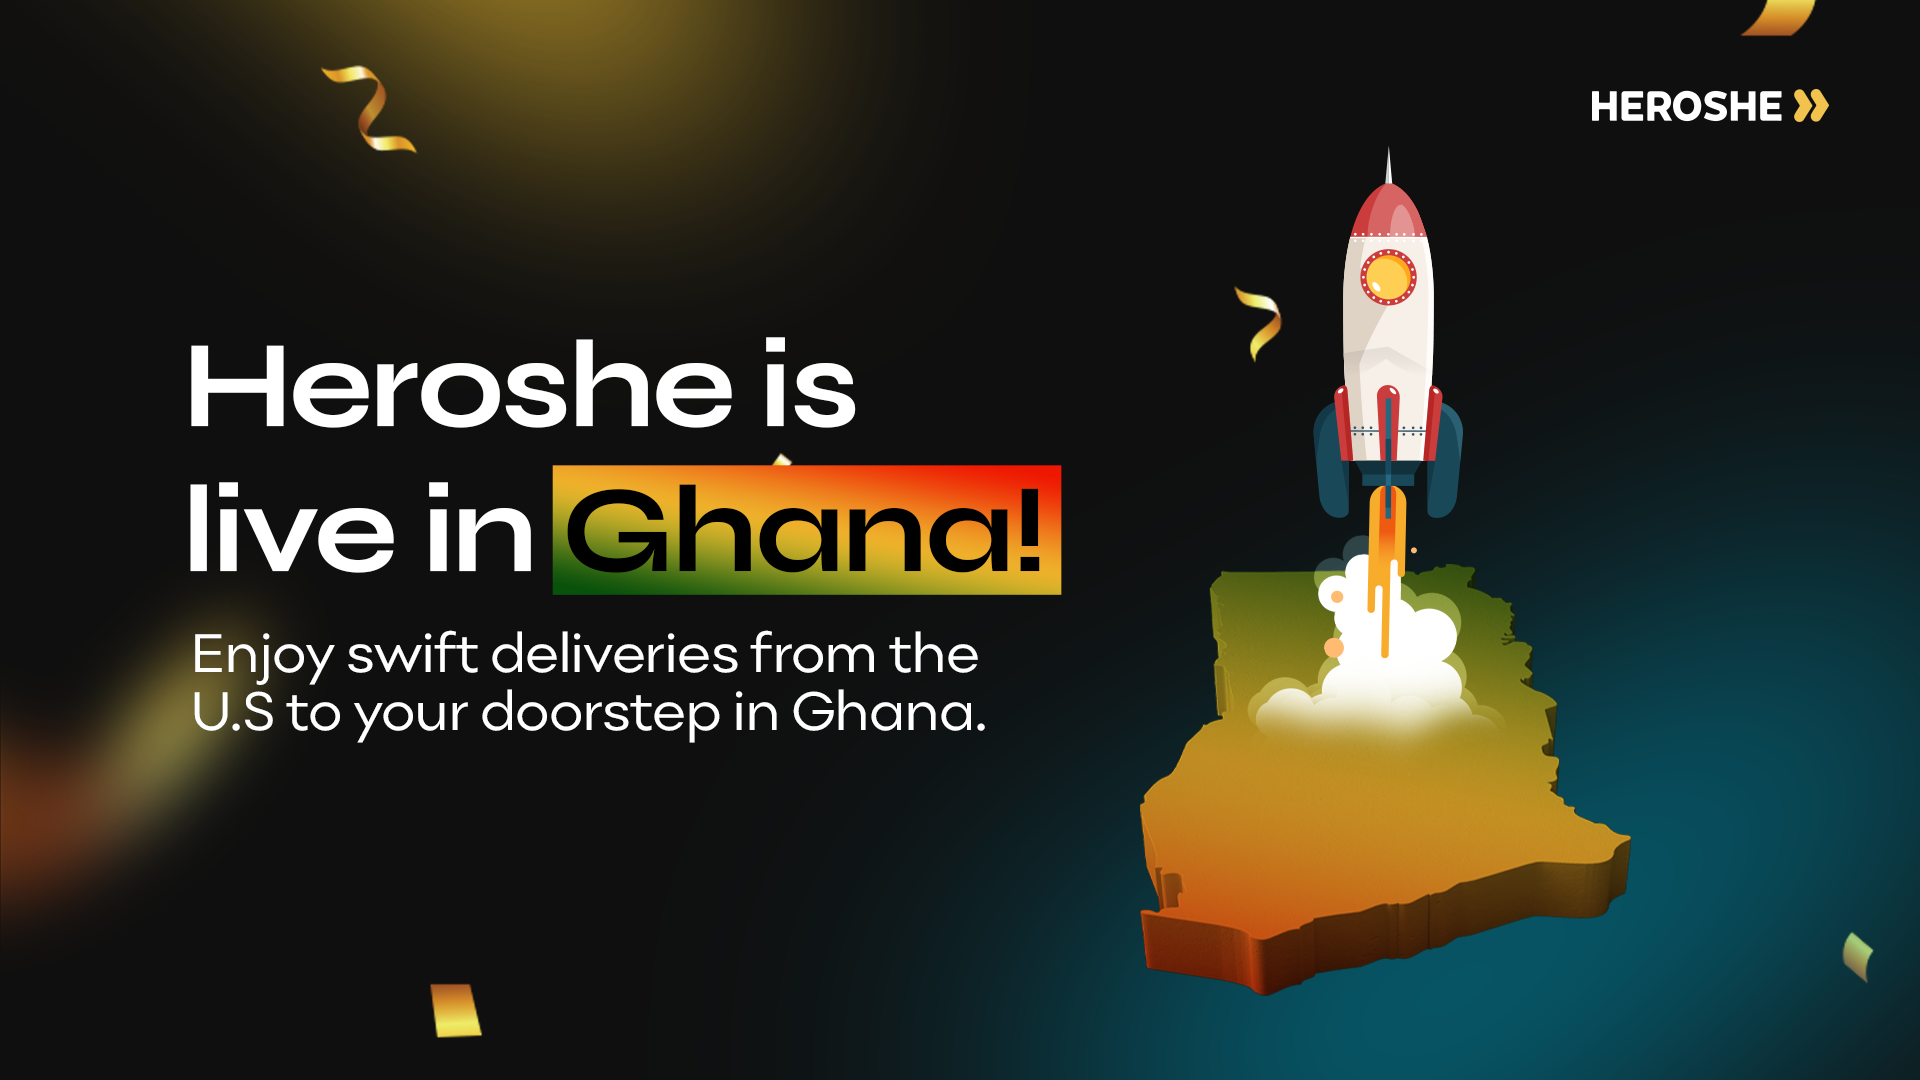 Heroshe is live in Ghana